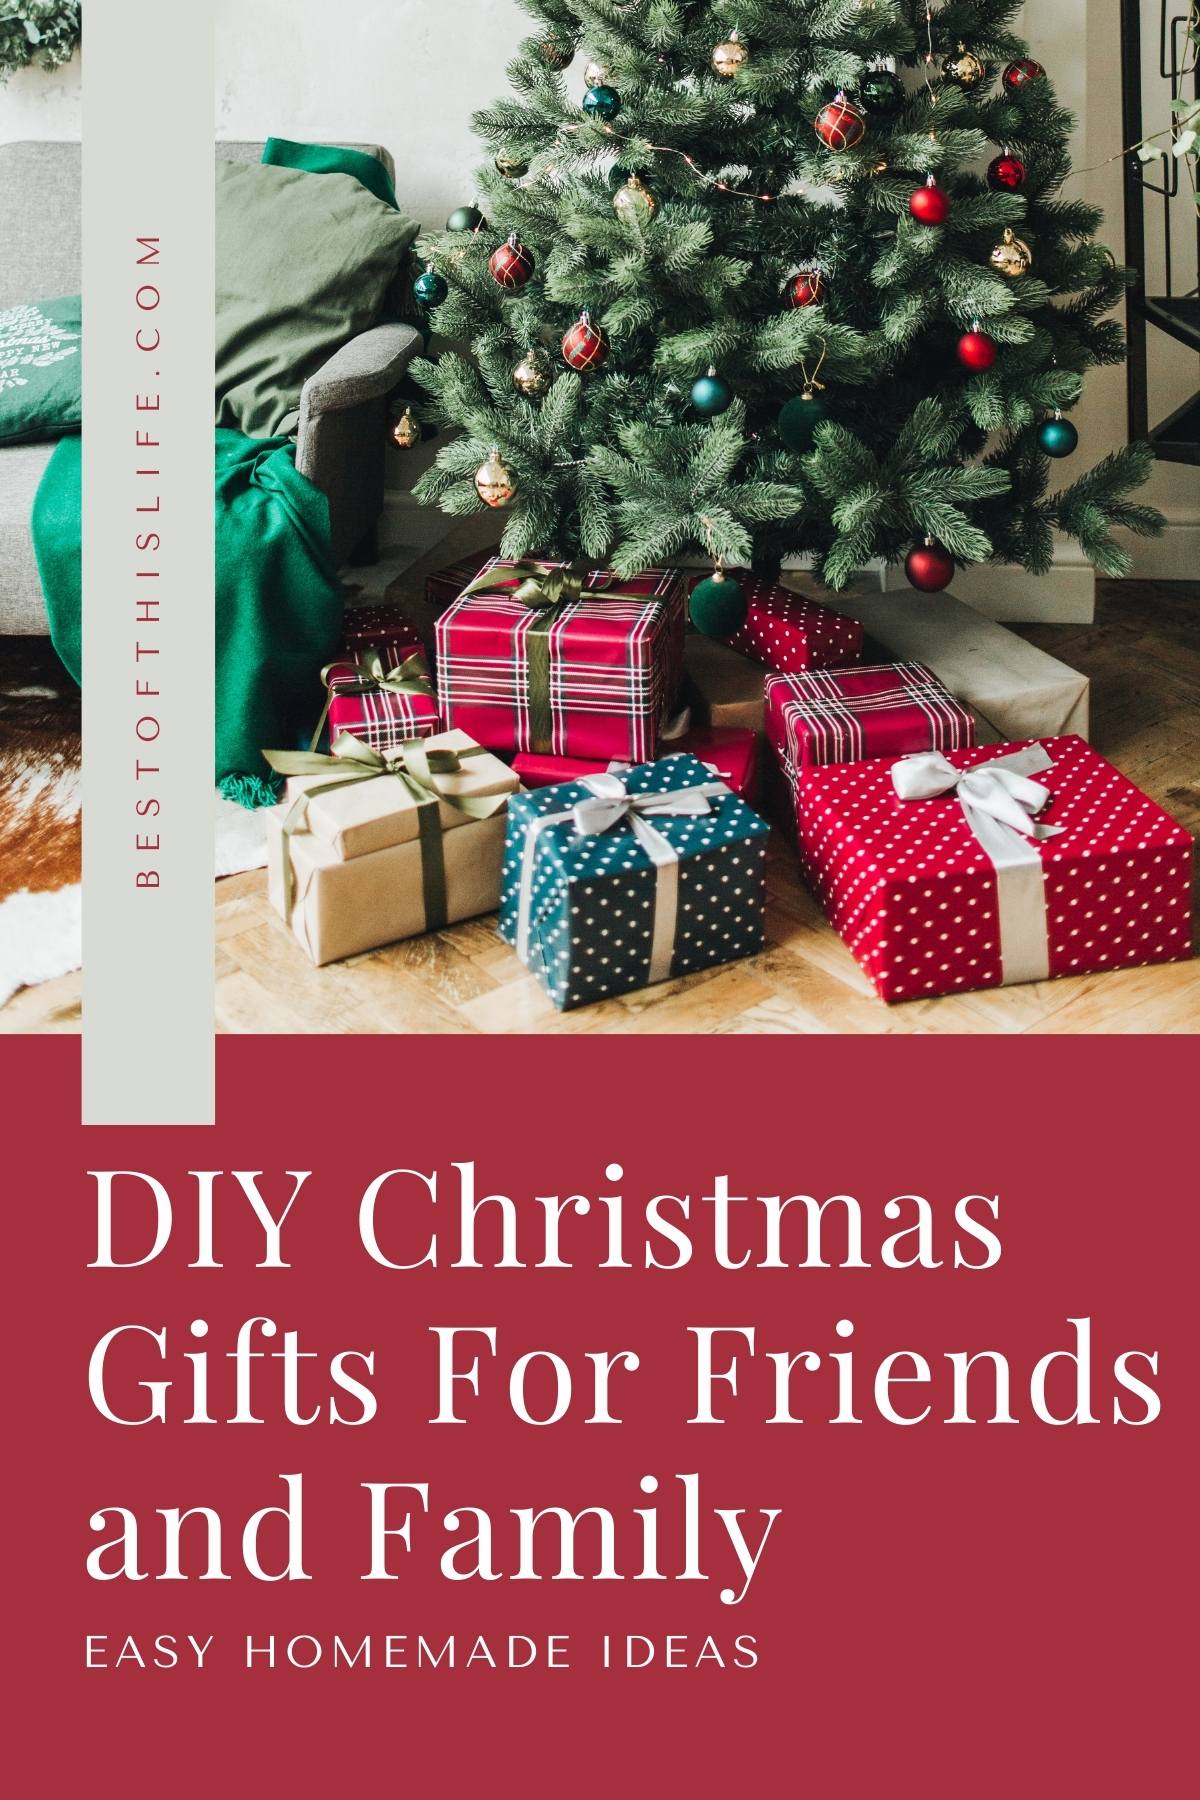 https://www.bestofthislife.com/wp-content/uploads/2021/11/Easy-DIY-Christmas-Gifts.jpg